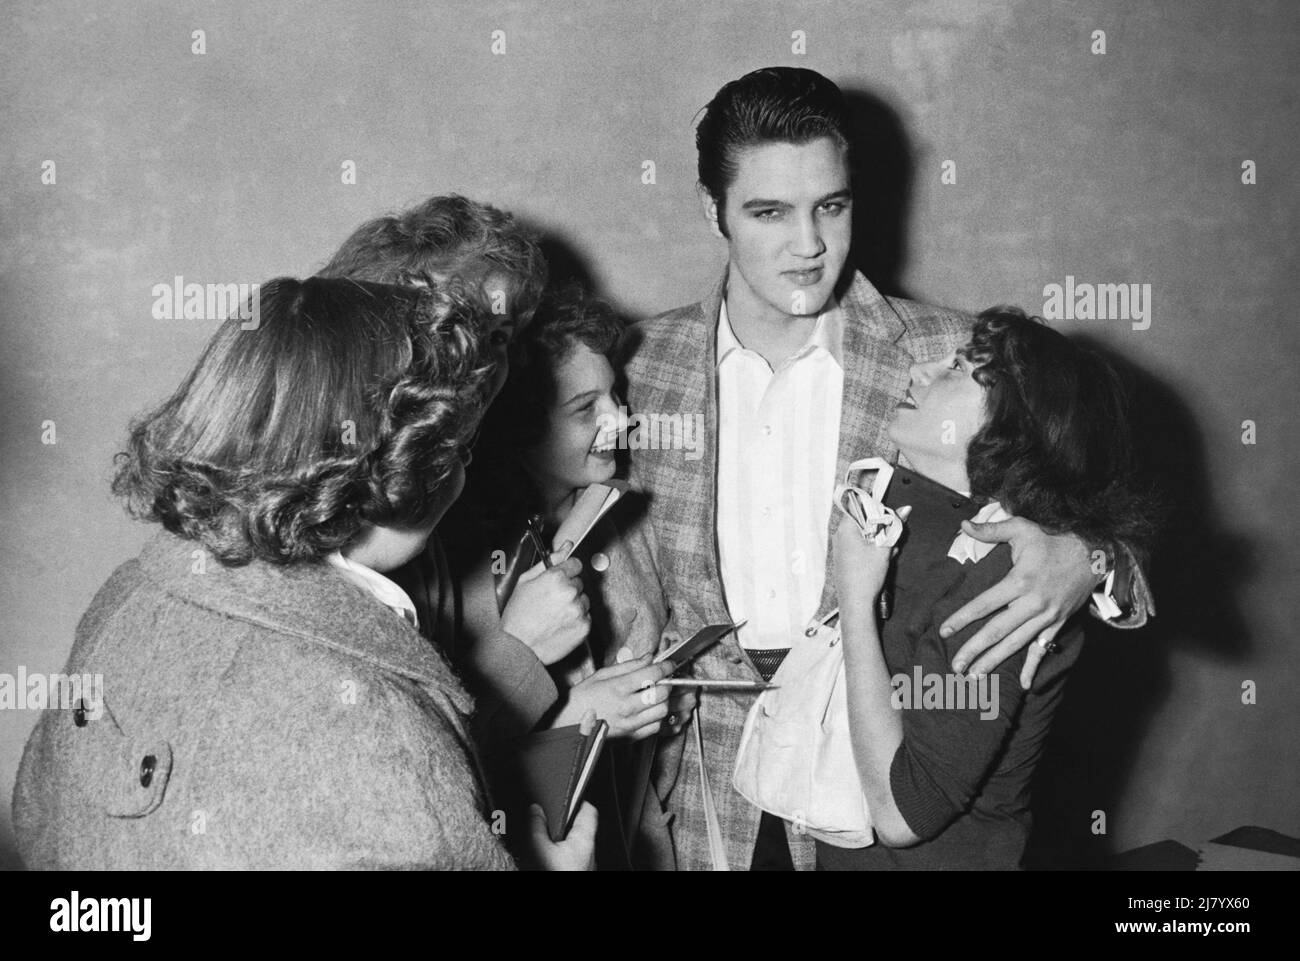 Elvis et fans, c. 1955 Banque D'Images